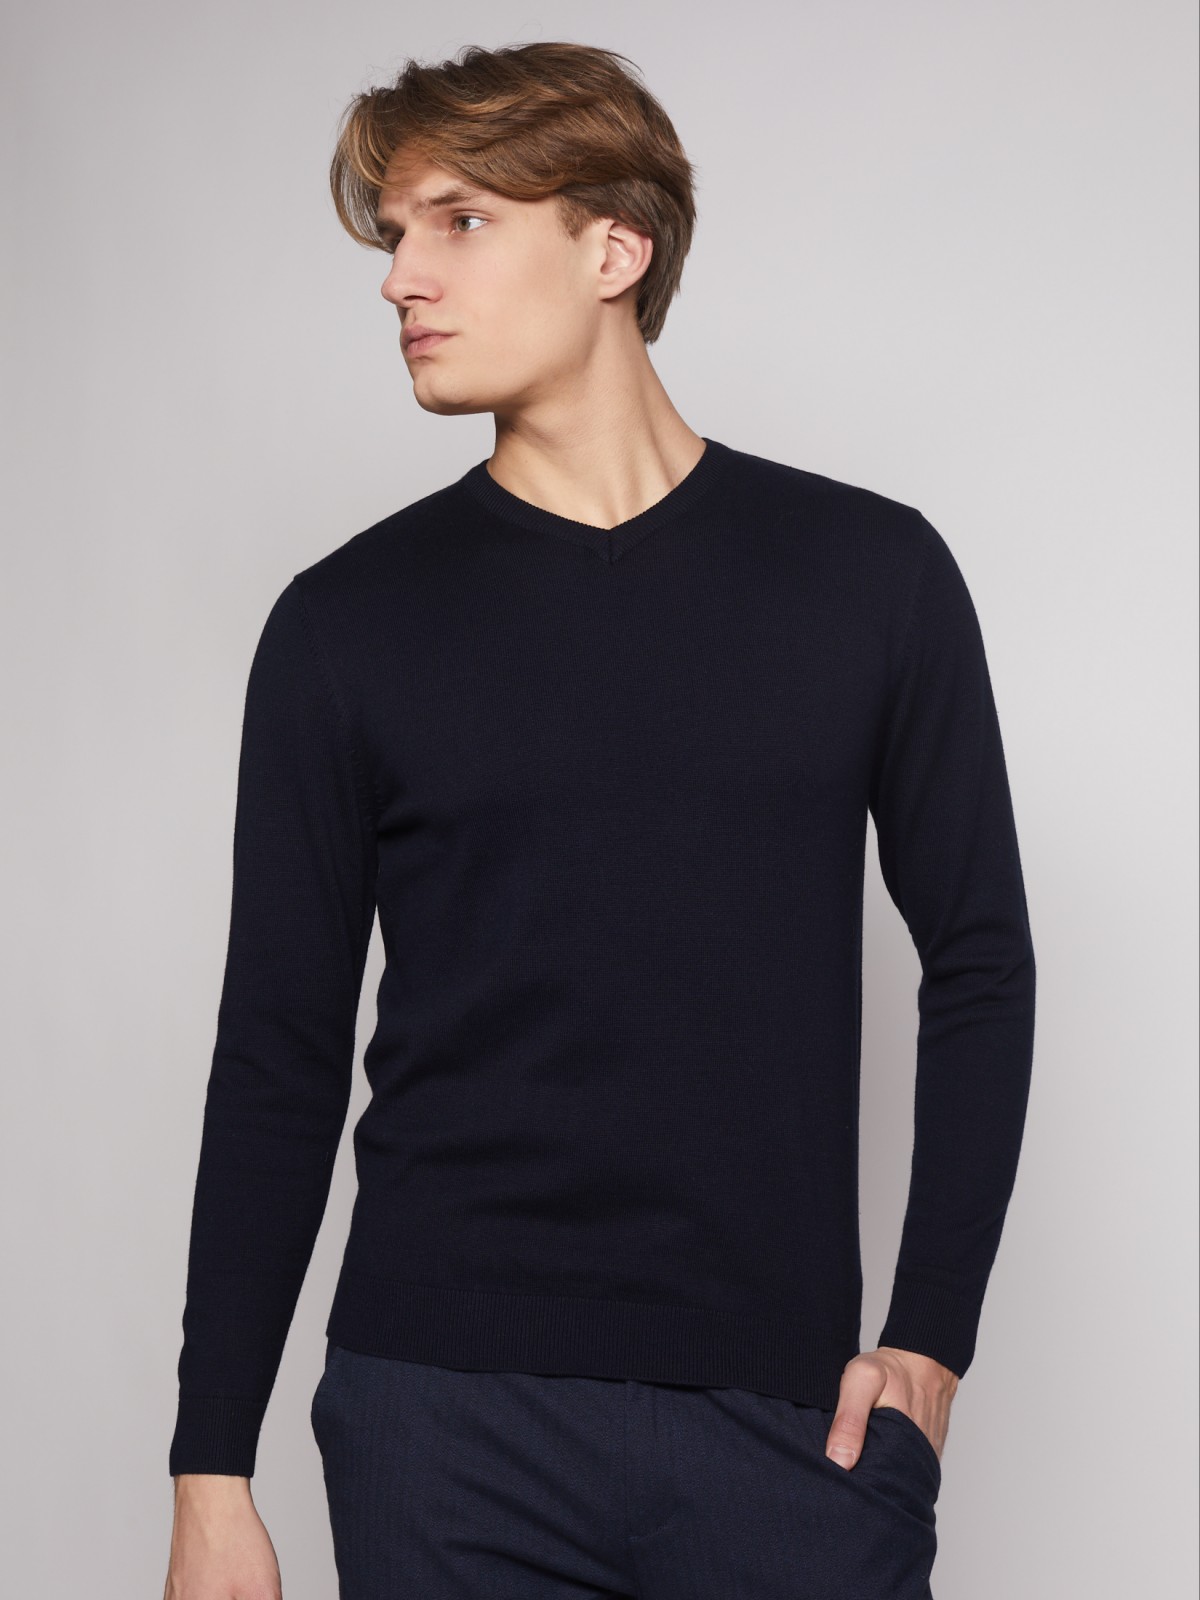 Пуловер с V-образным вырезом zolla 012336183012, цвет синий, размер S - фото 4